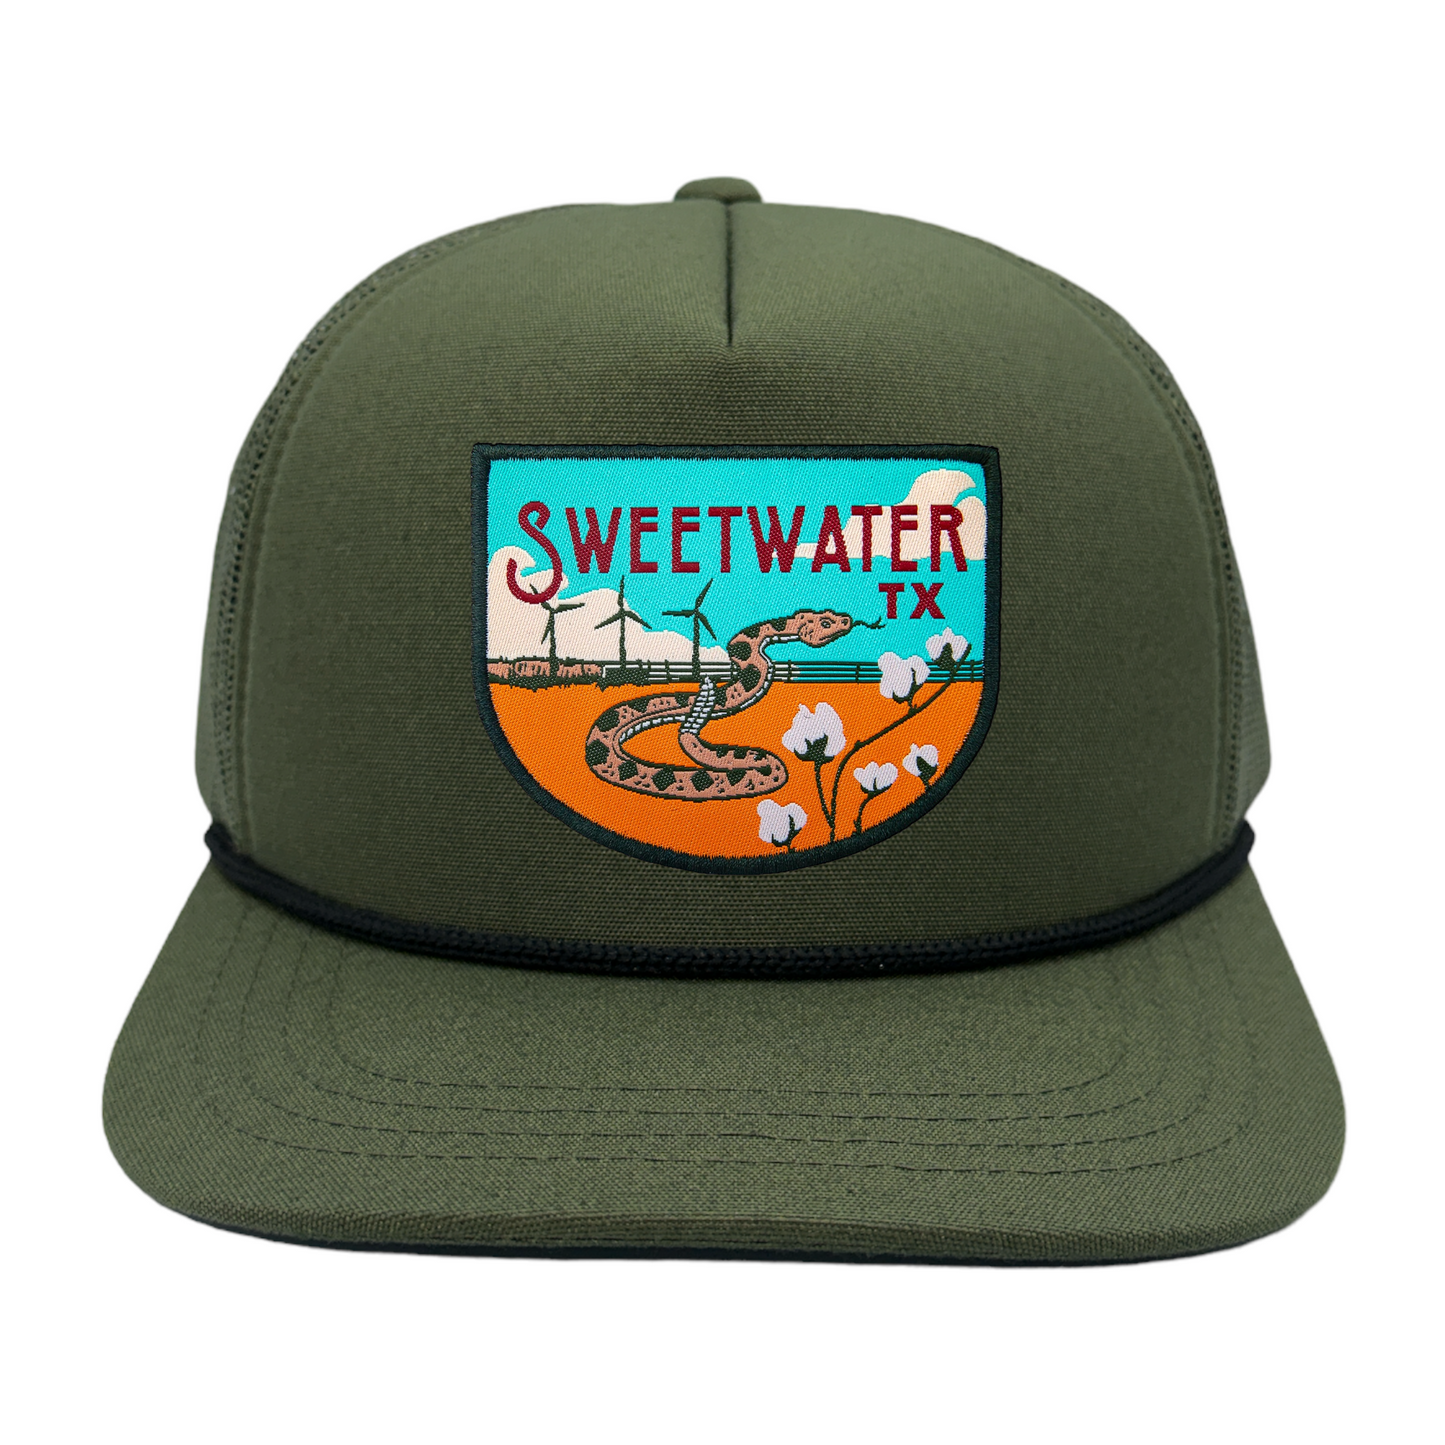 Sweetwater, TX Trucker